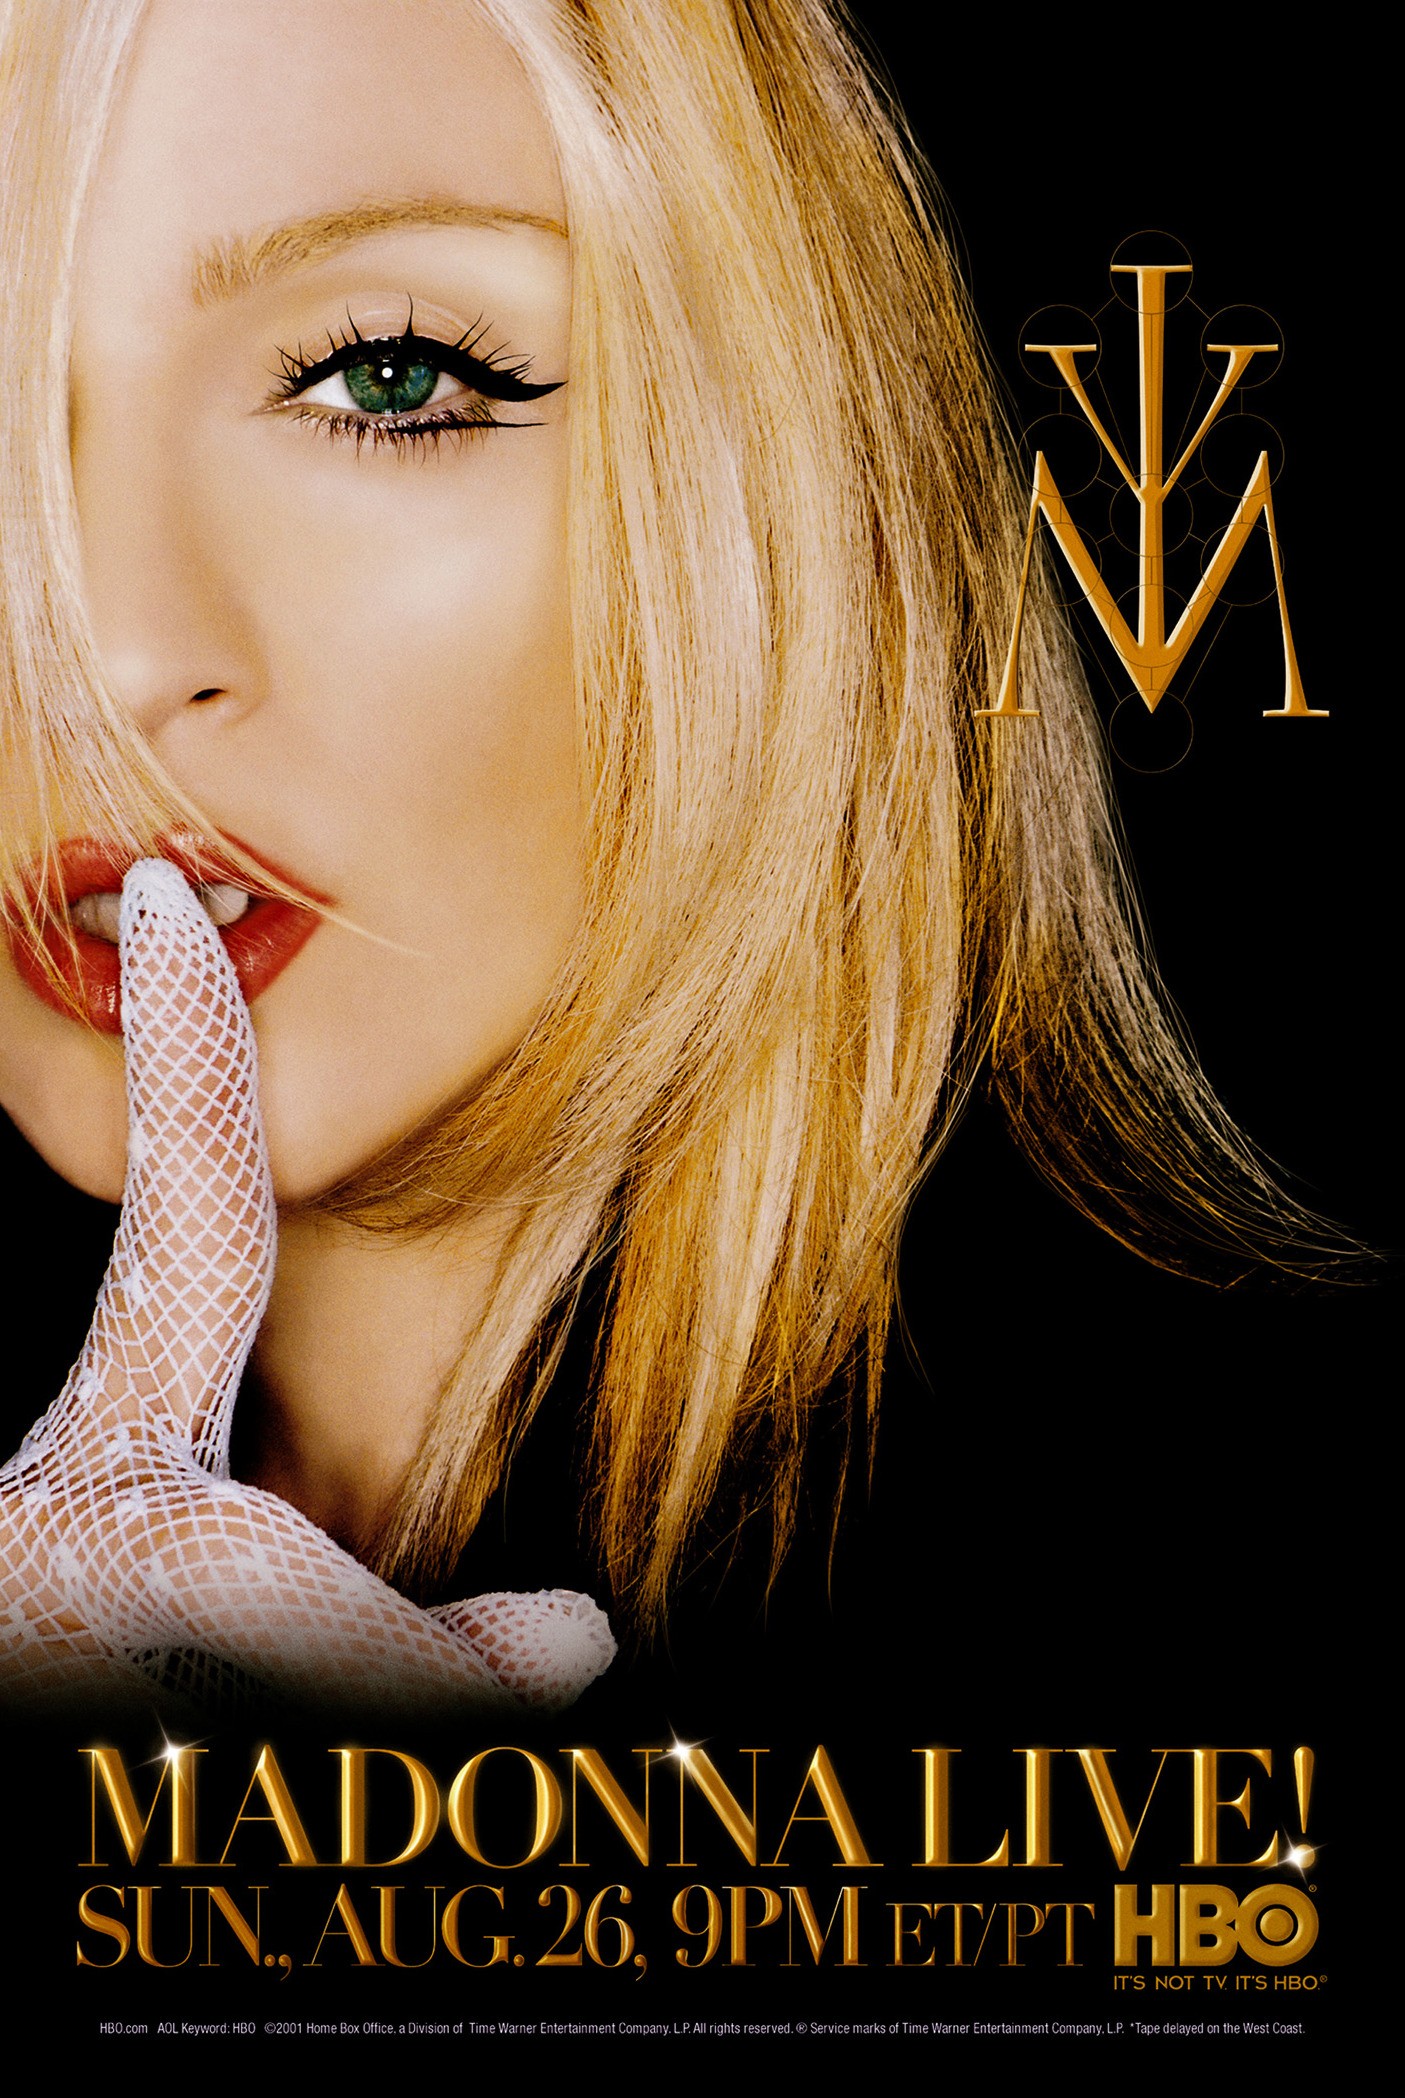 Mega Sized TV Poster Image for Madonna Live! 